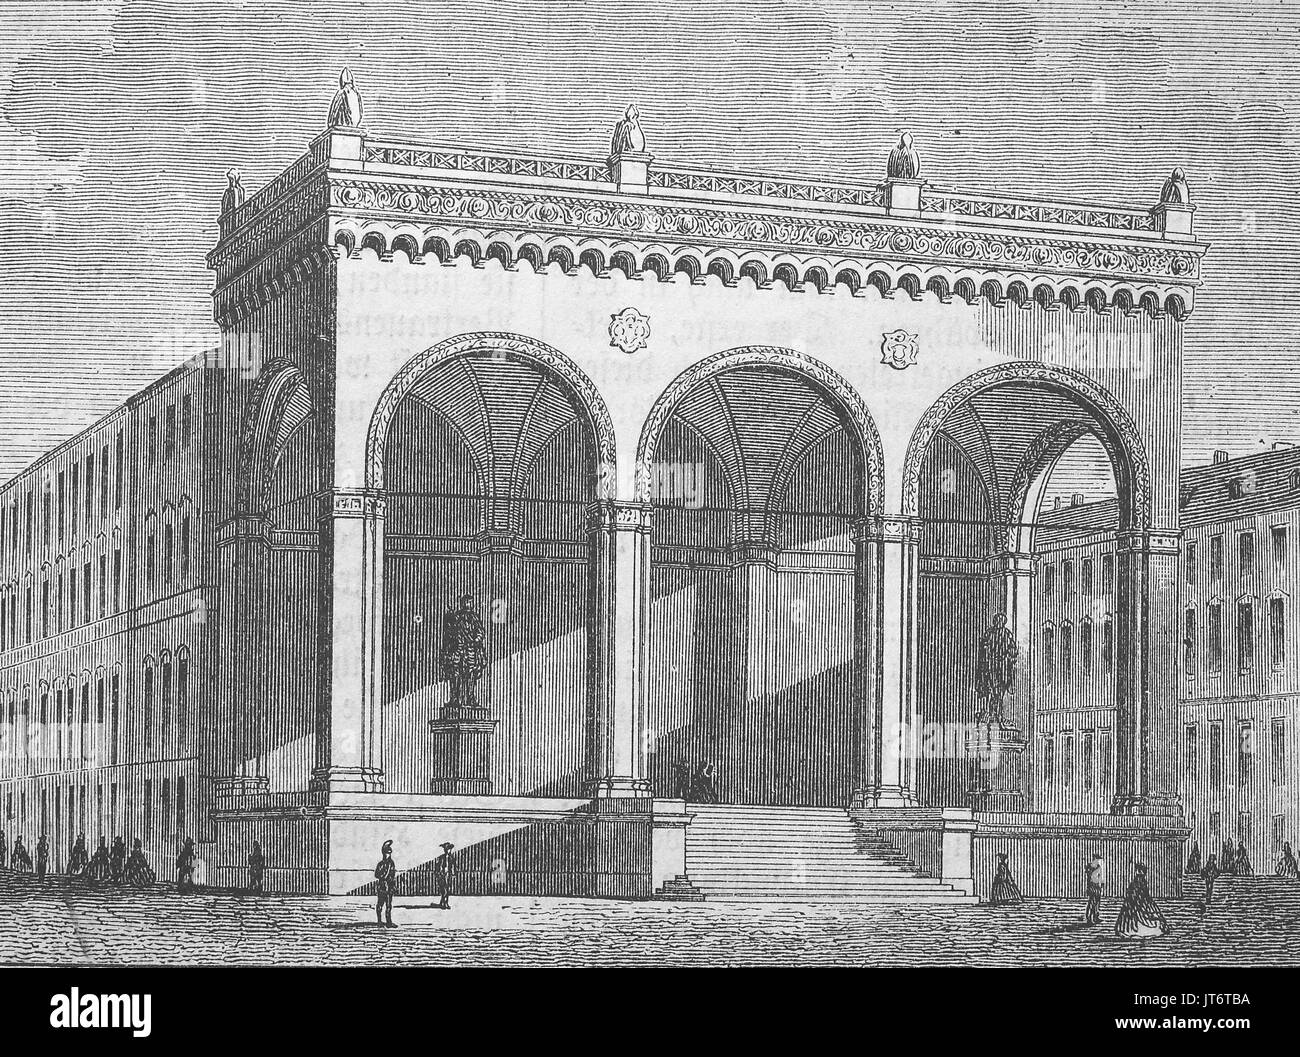 Das Gebäude Feldherrnhalle in München, Bayern, Deutschland, Digital verbesserte Reproduktion eines Bildes zwischen 1880 - 1885 veröffentlicht. Stockfoto